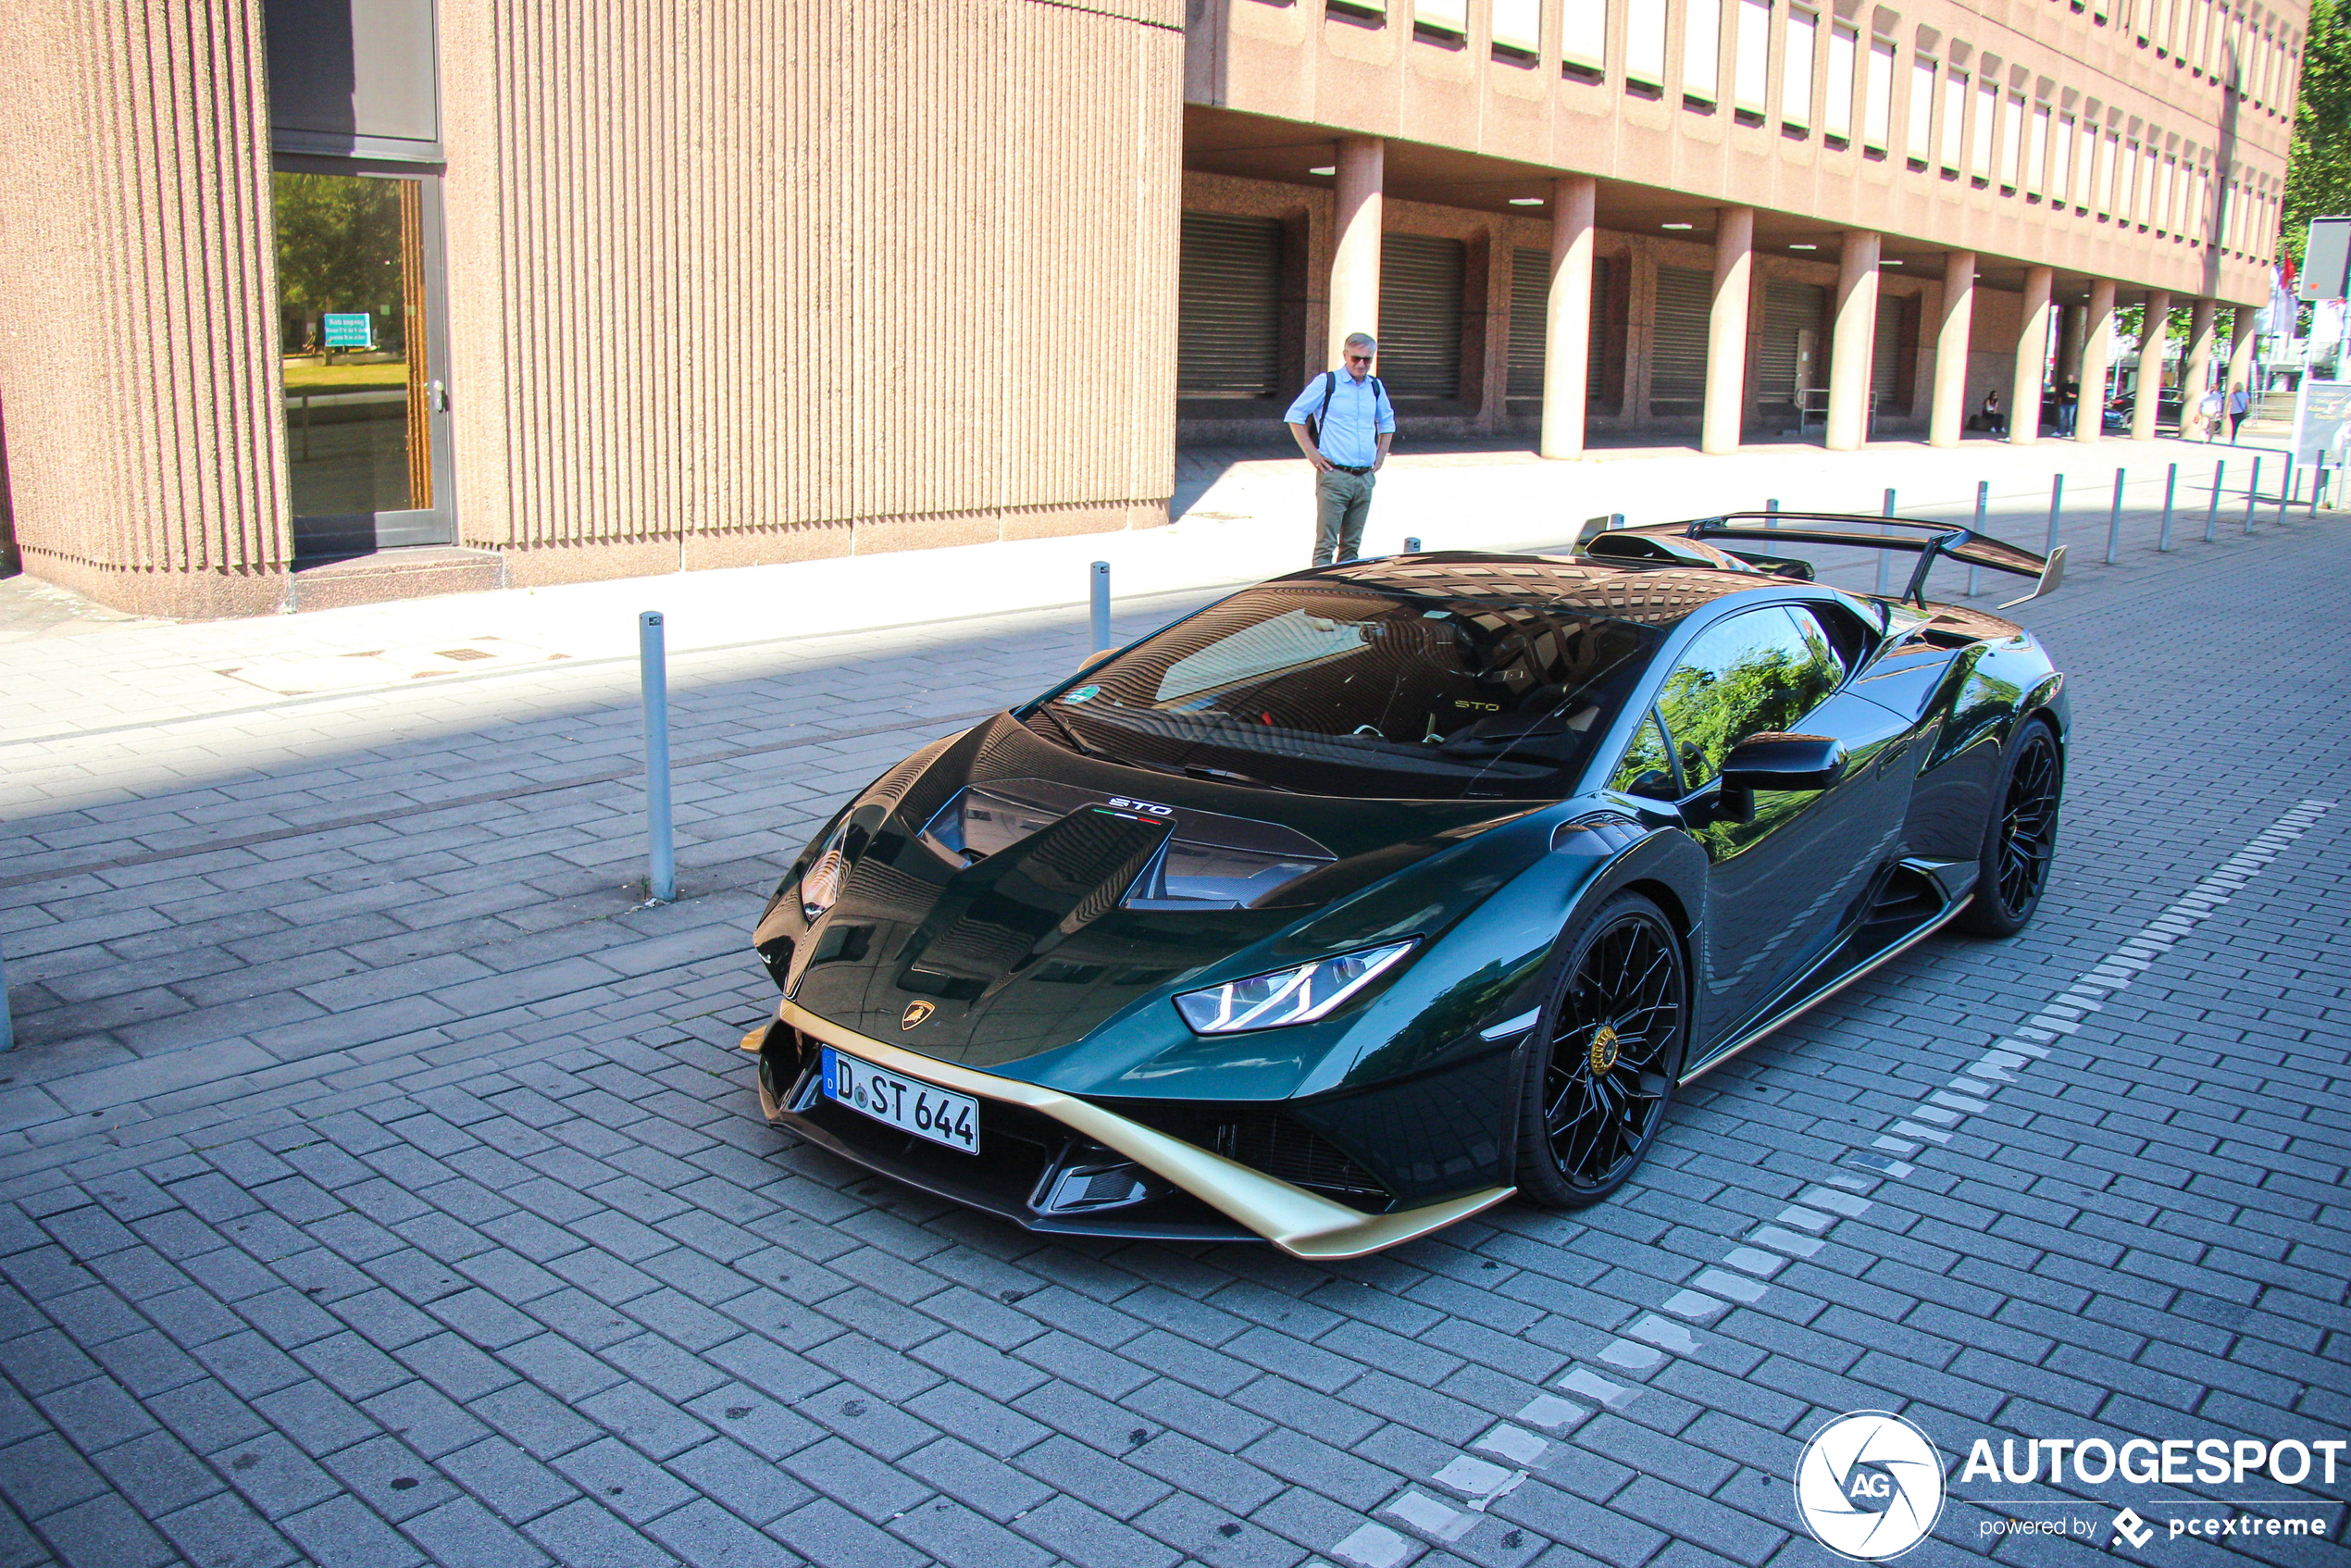 Groen-gouden Lamborghini Huracan STO luidt het weekend in